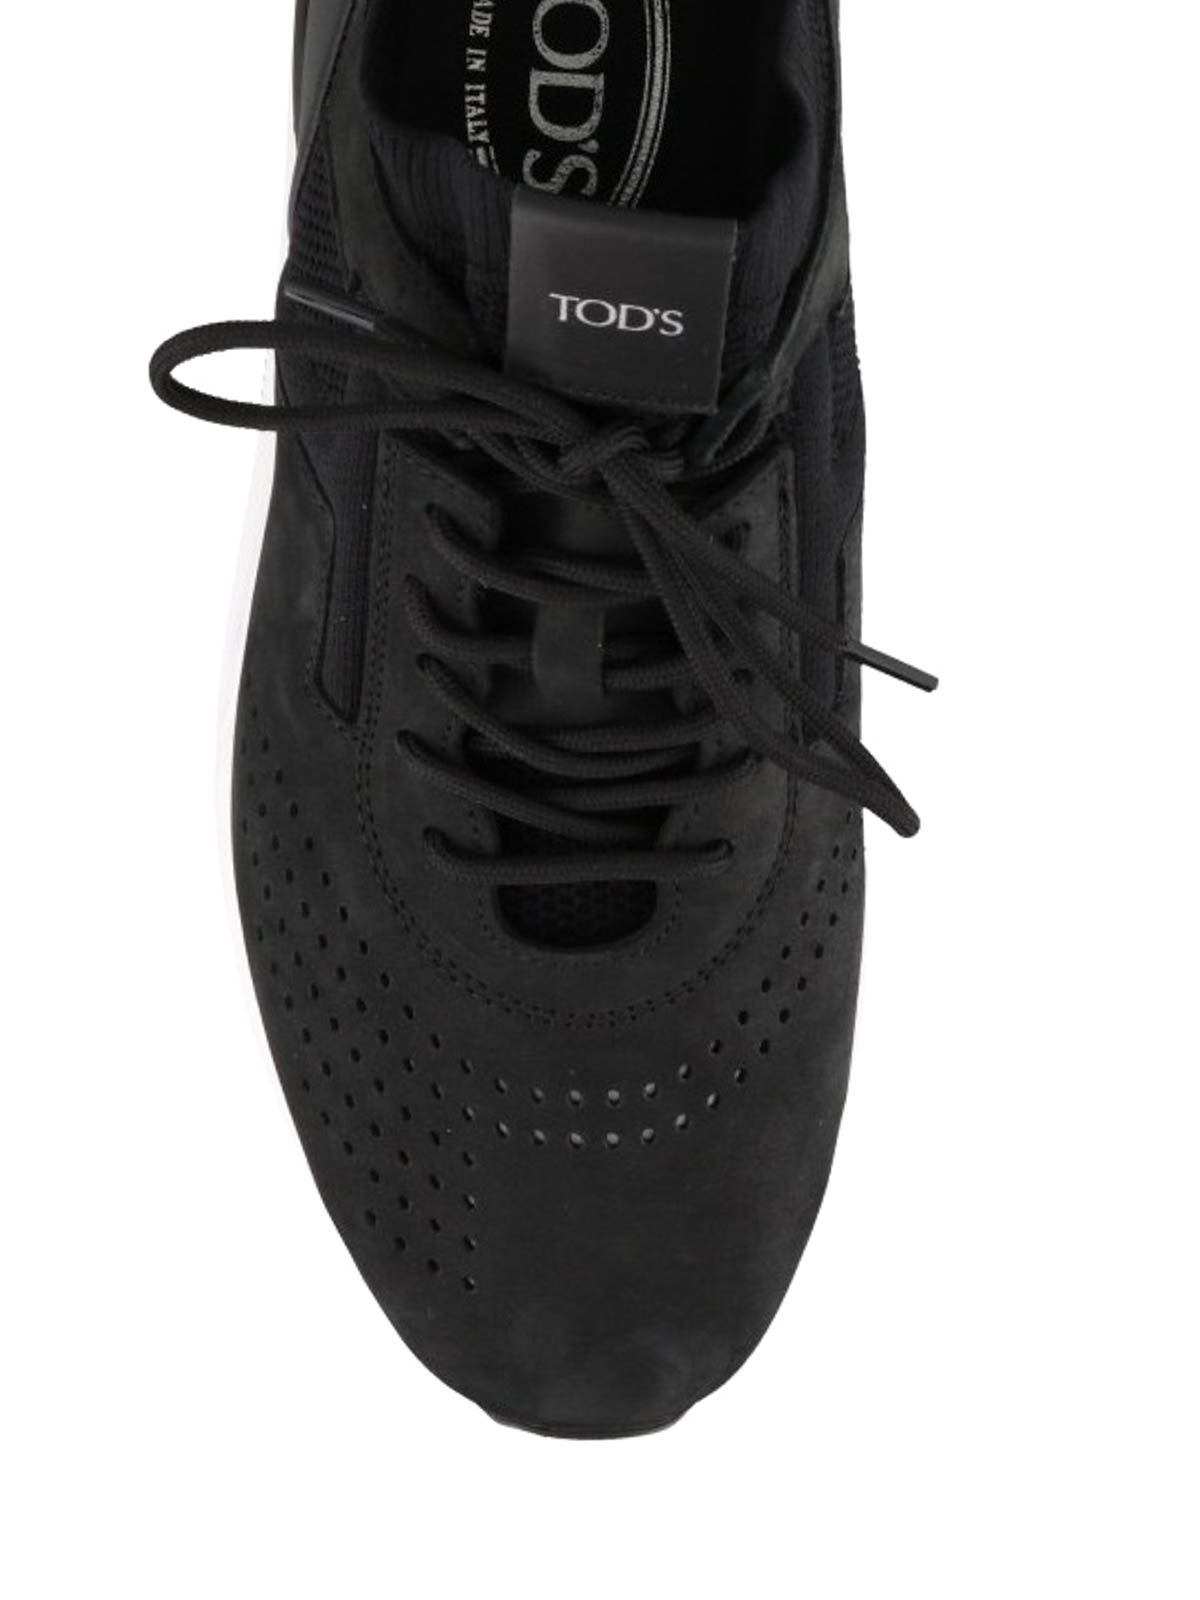 tods black sneakers